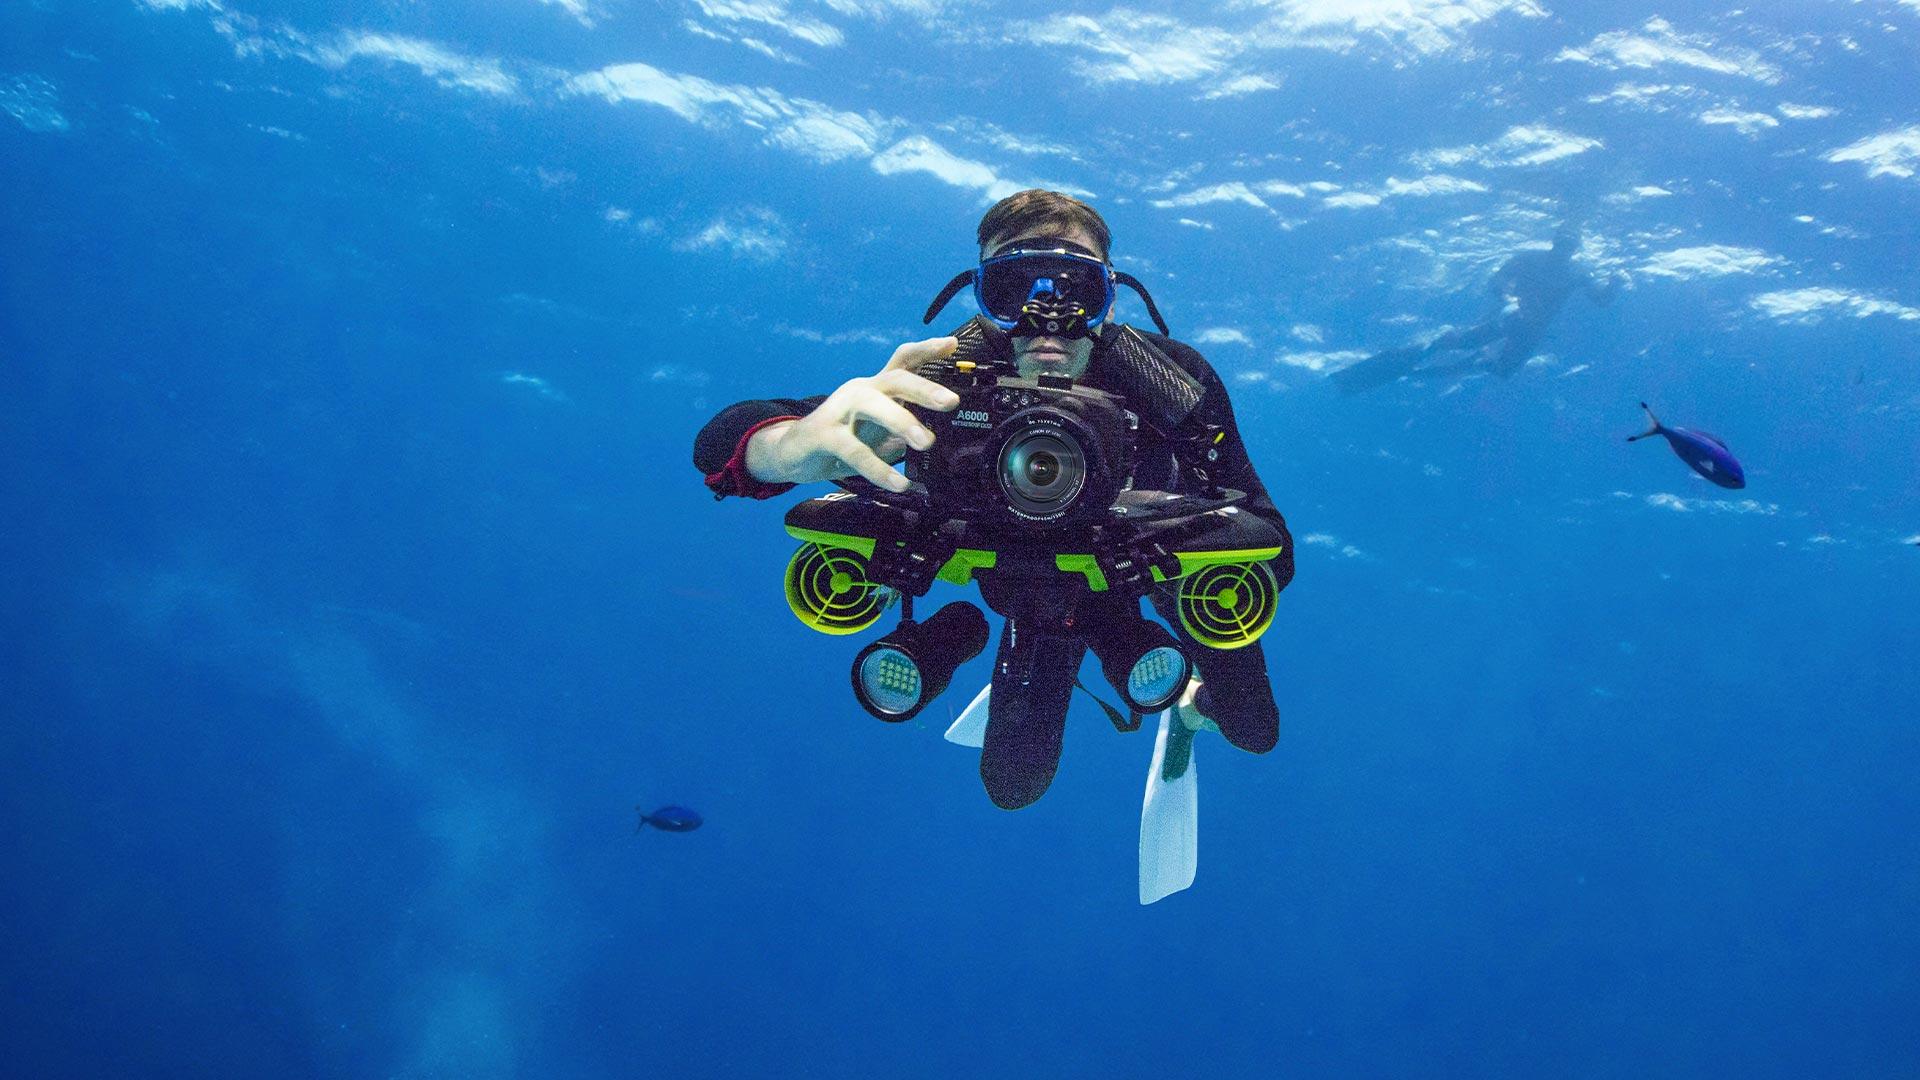 appareil photo sur un scooter sous marin sublue